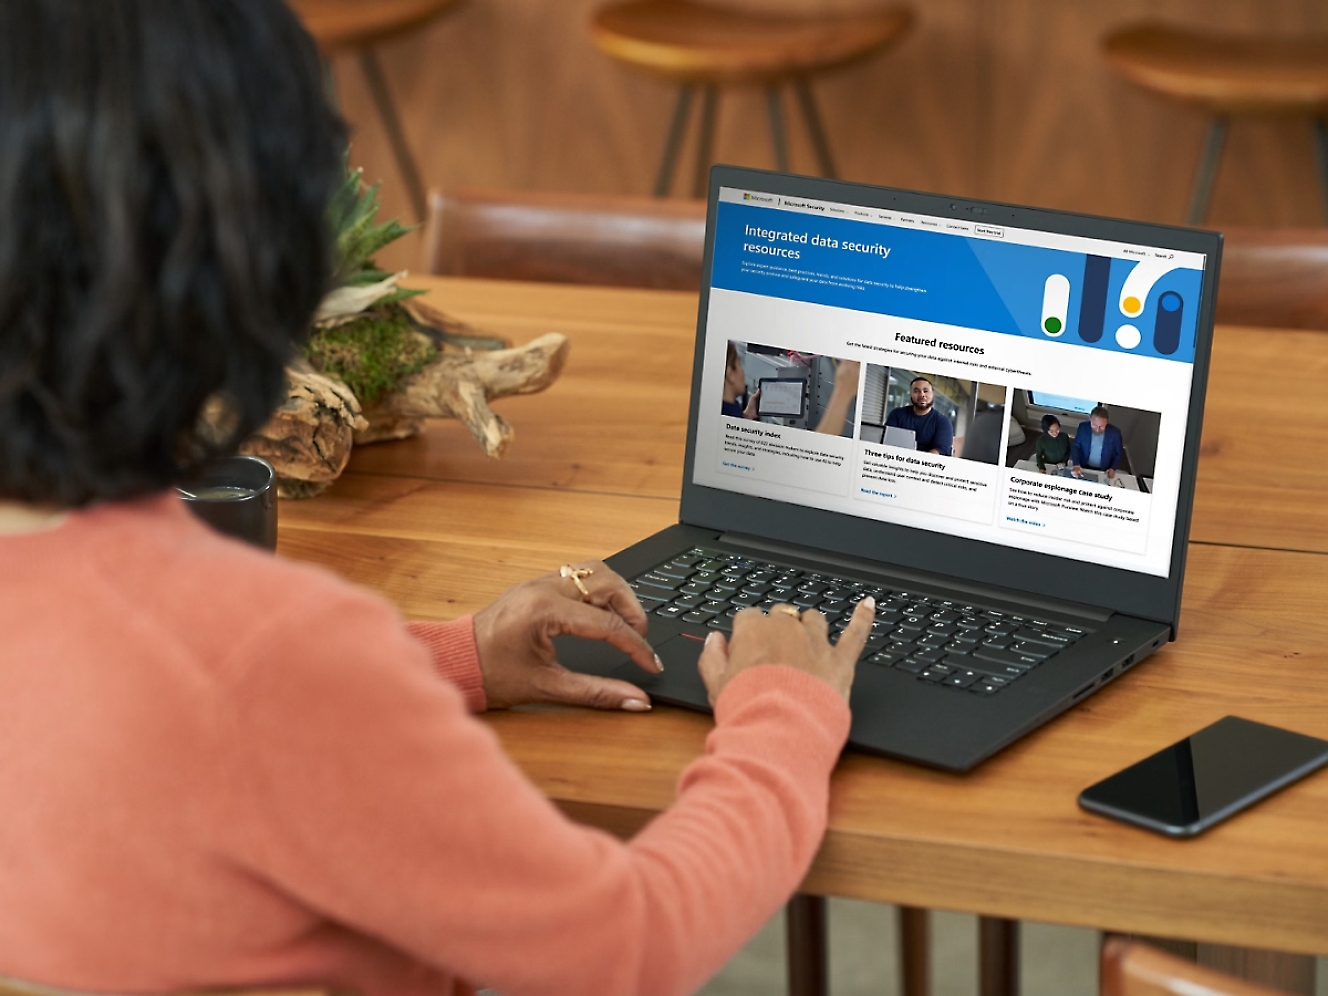 Người phụ nữ mặc áo len màu cam đang sử dụng máy tính xách tay hiển thị trang web về bảo mật dữ liệu trên màn hình ở bàn gỗ